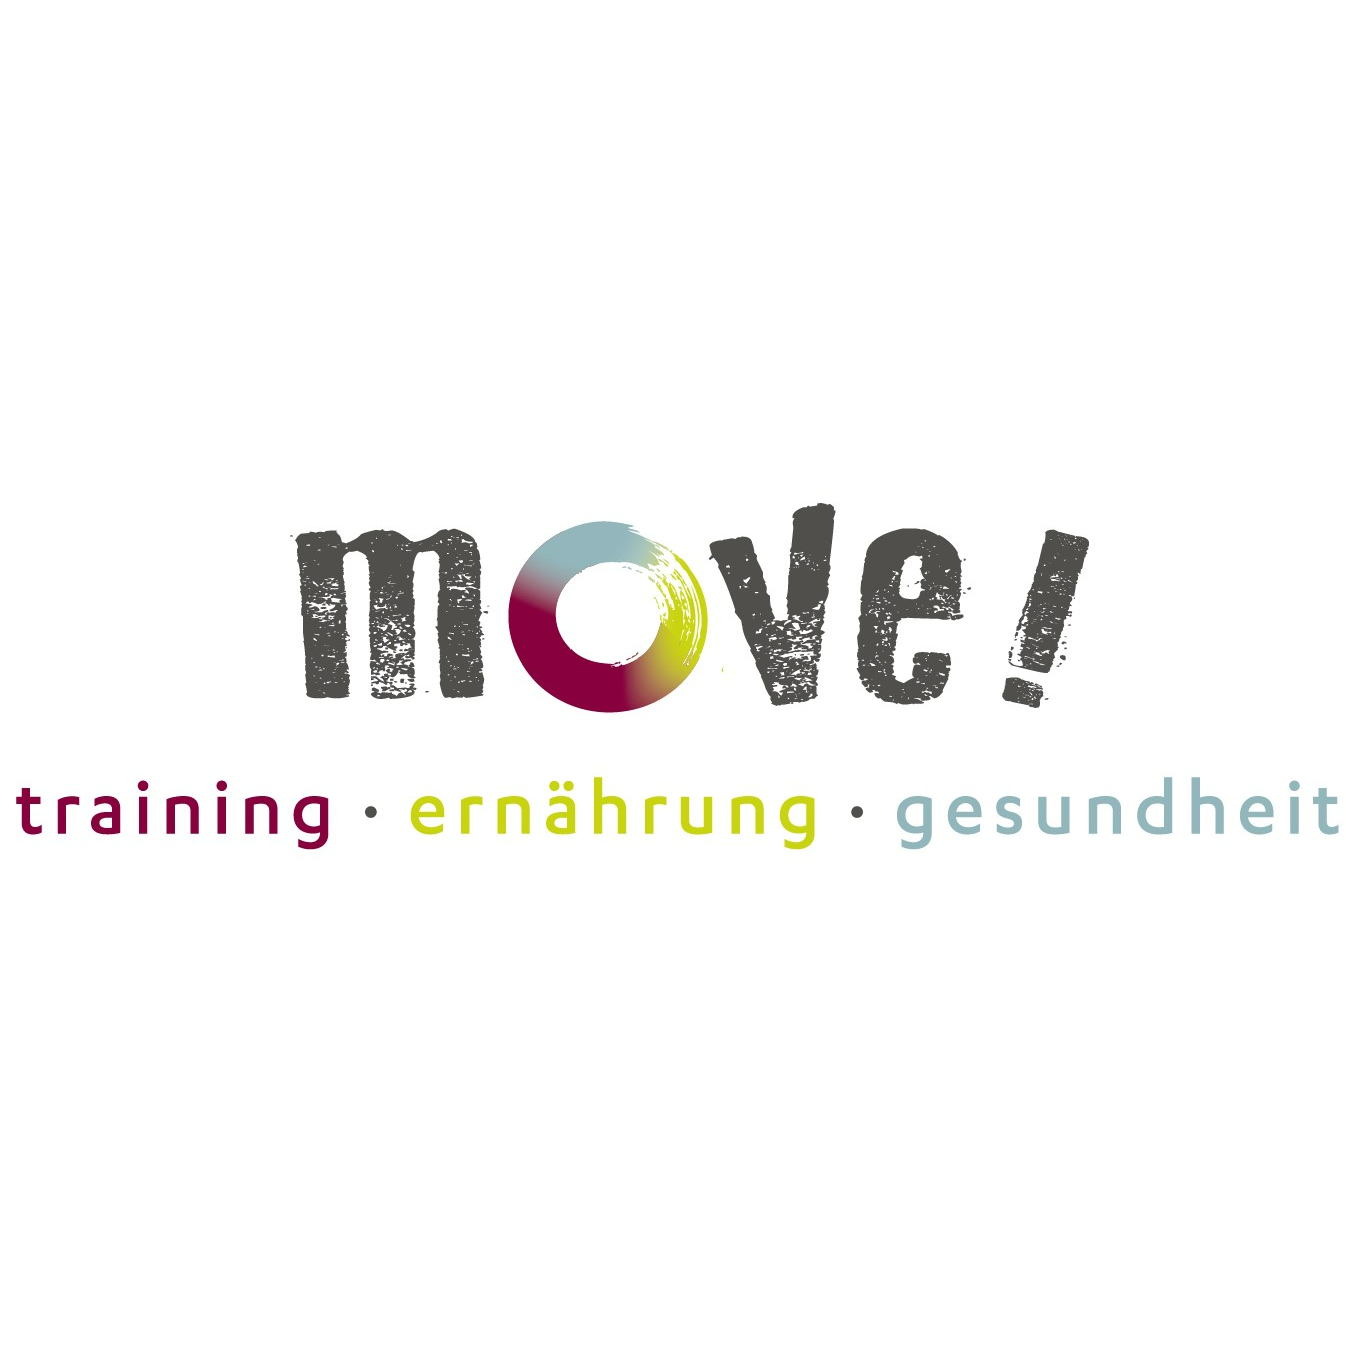 Move! Studio Gundelfingen - Training. Ernährung. Gesundheit in Gundelfingen im Breisgau - Logo